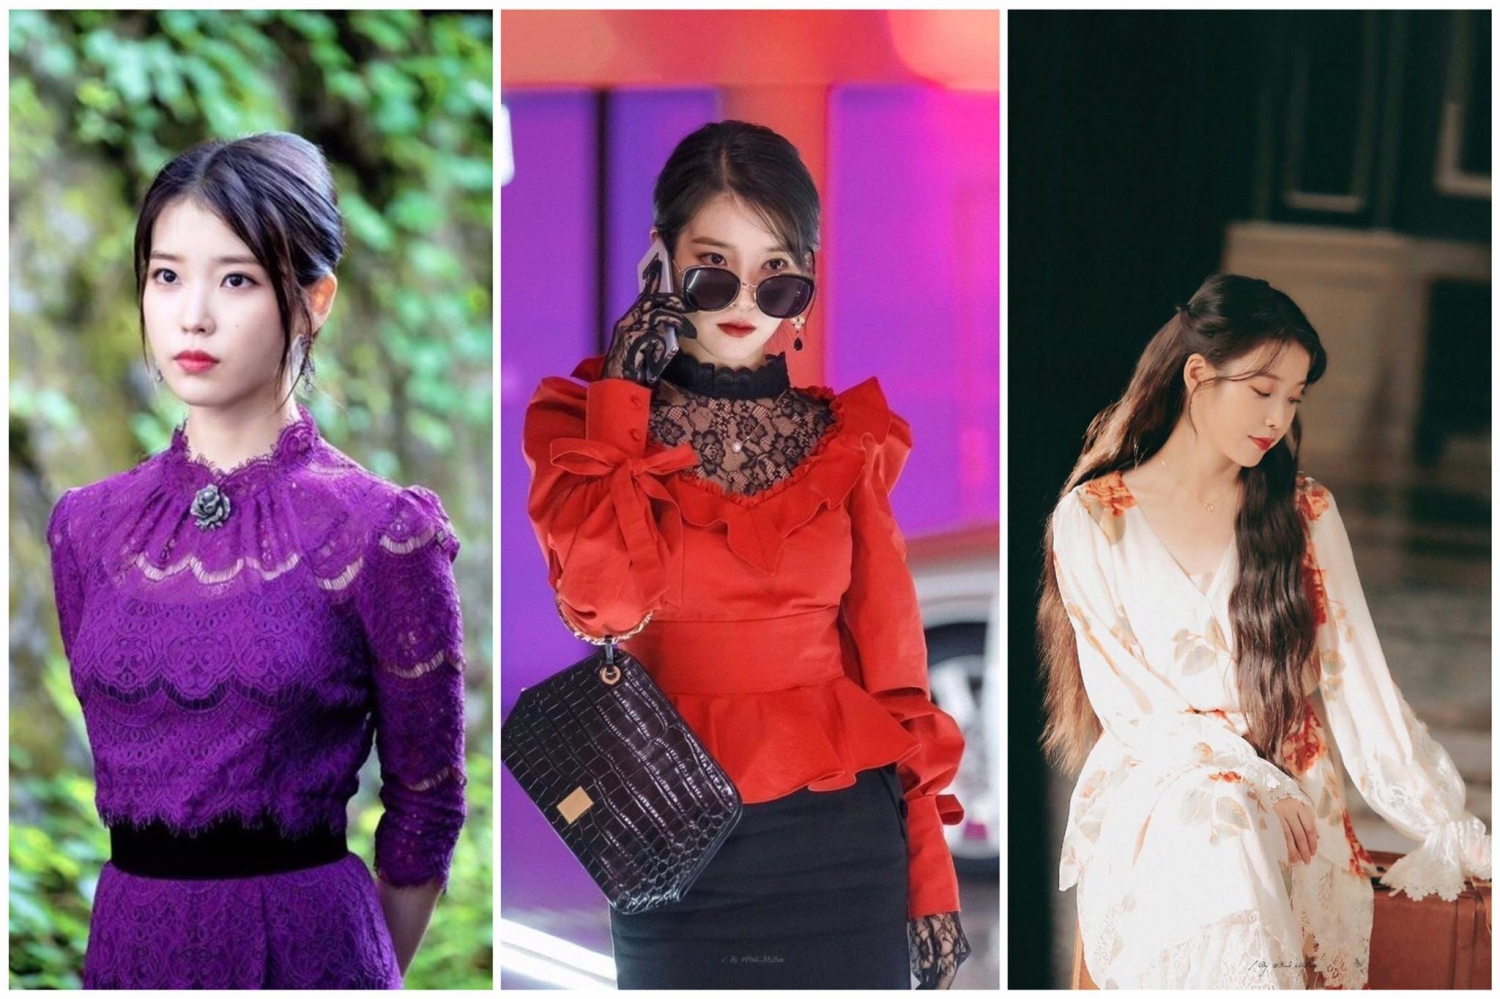 Điểm danh 5 mỹ nhân là các biểu tượng thời trang đình đám trong phim Hàn